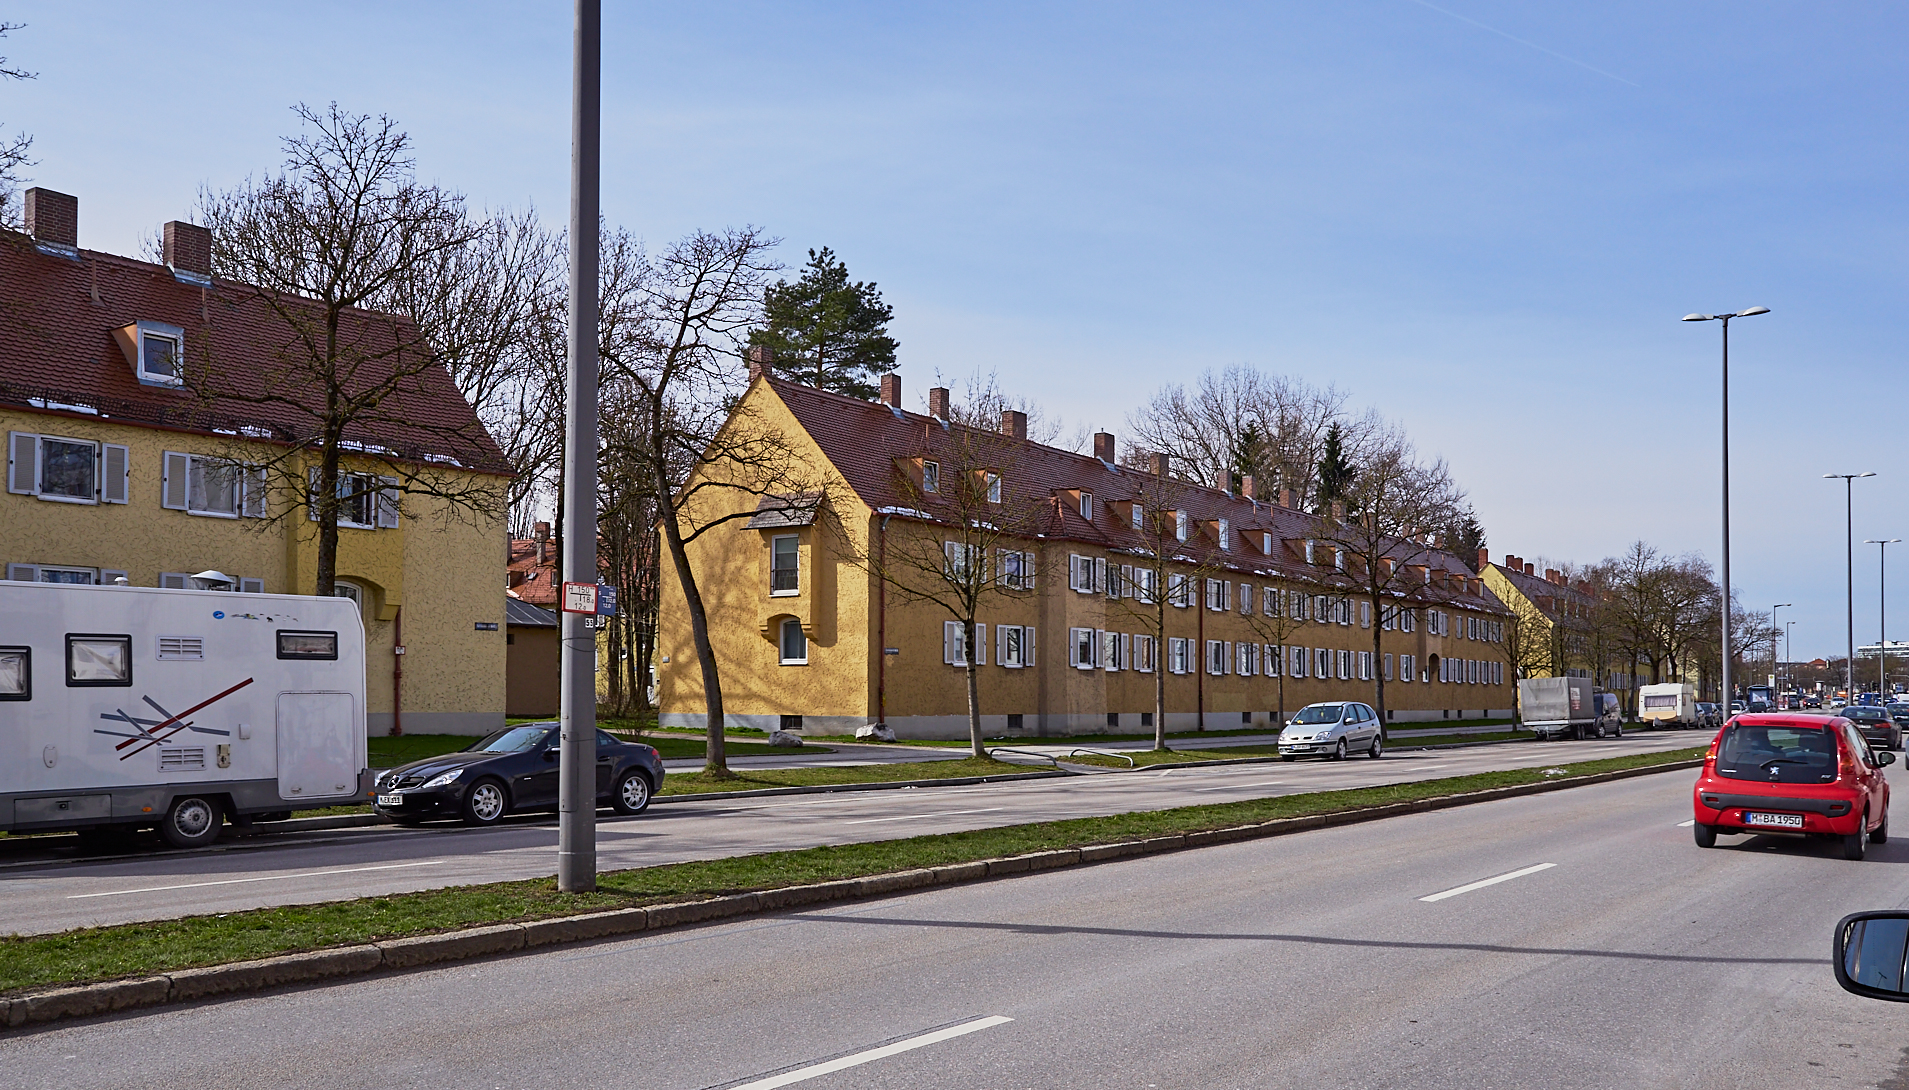 Neuperlach-maikaefersiedlung am 04.03.2016